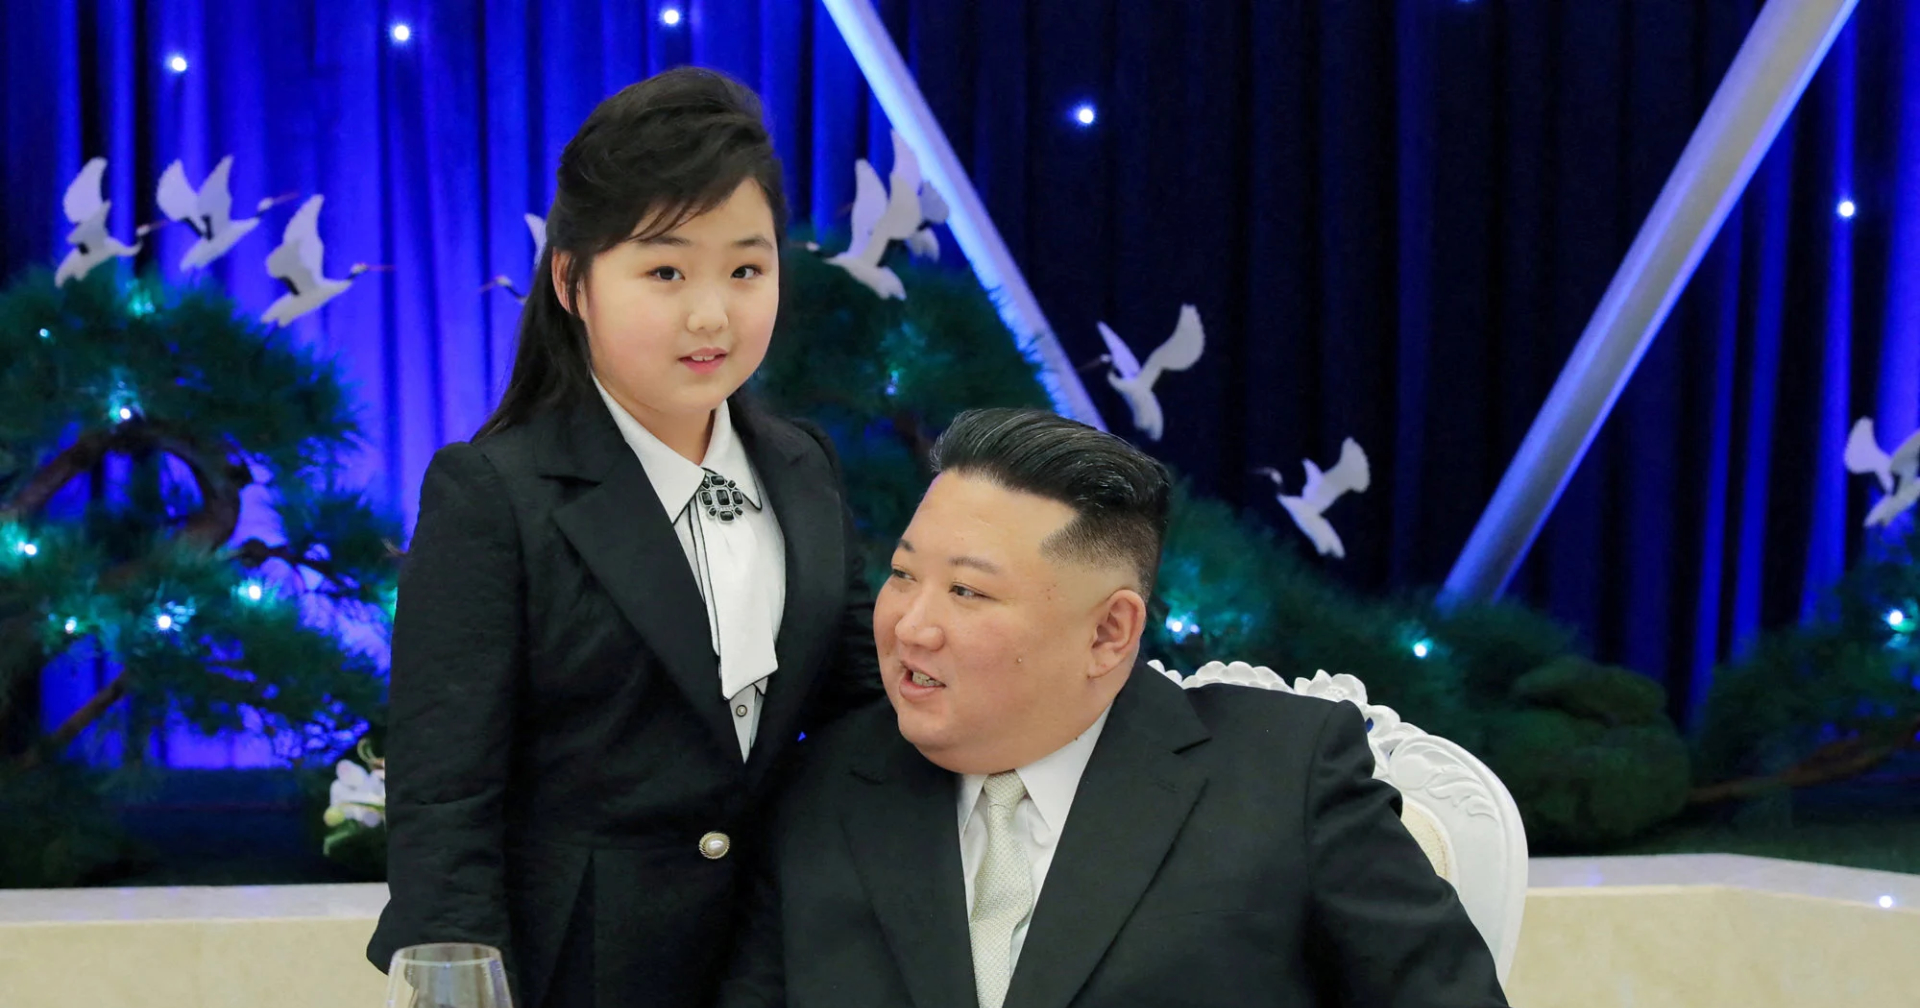 คิมจองอึนสั่งเข้ม! ห้ามประชาชนเกาหลีเหนือใช้ชื่อซ้ำกับลูกสาว ‘คิมจูแอ’